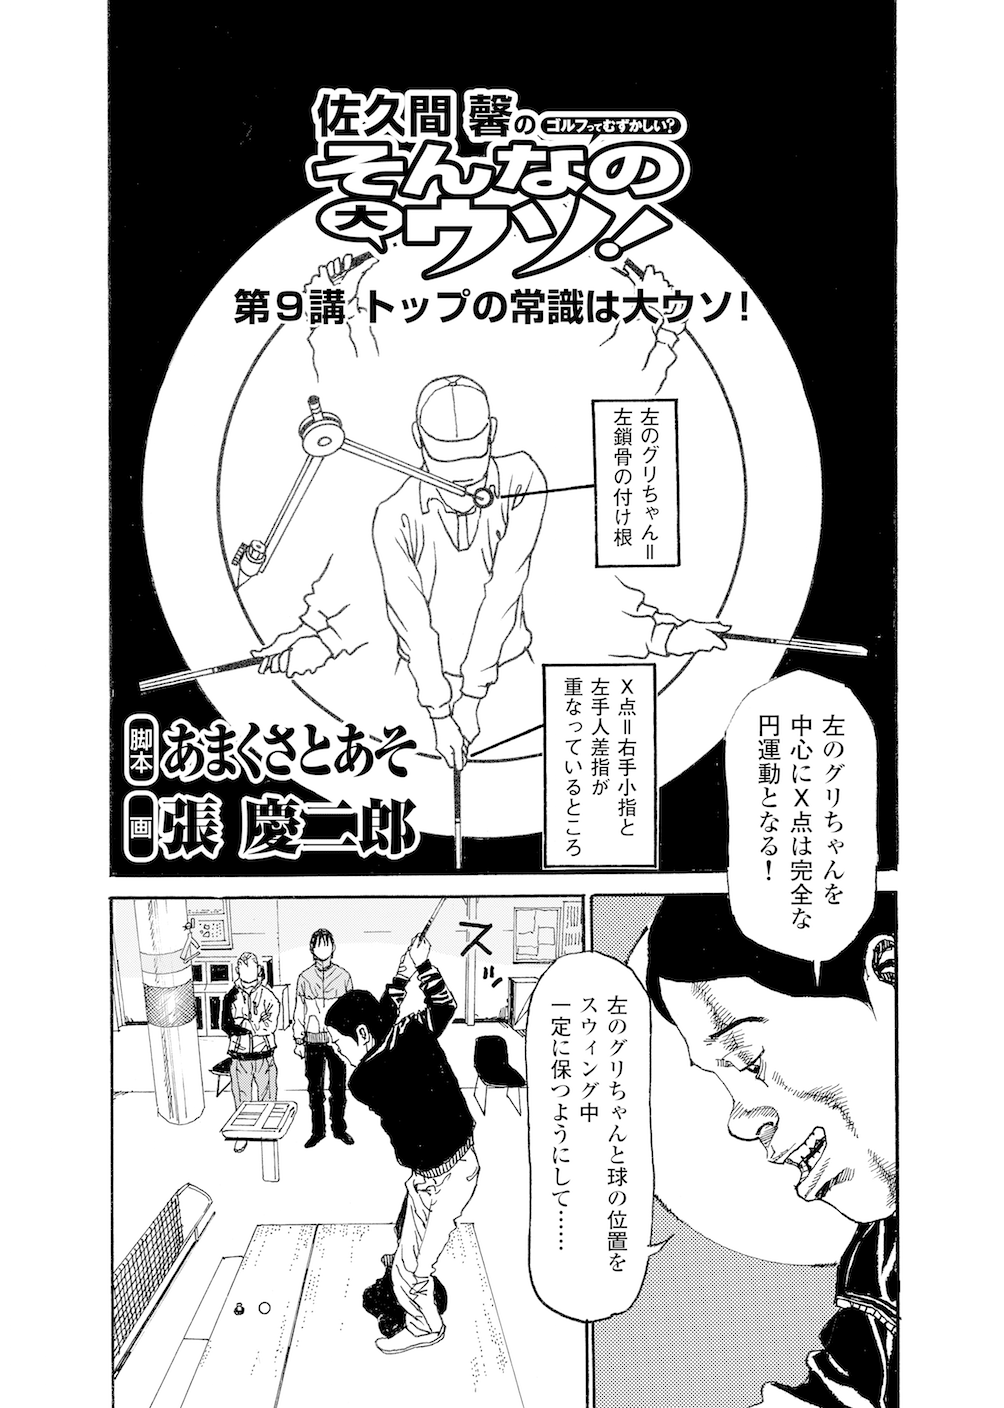 第9話 トップの常識は大ウソ 無料で読めるゴルフレッスンコミックweb 日本文芸社